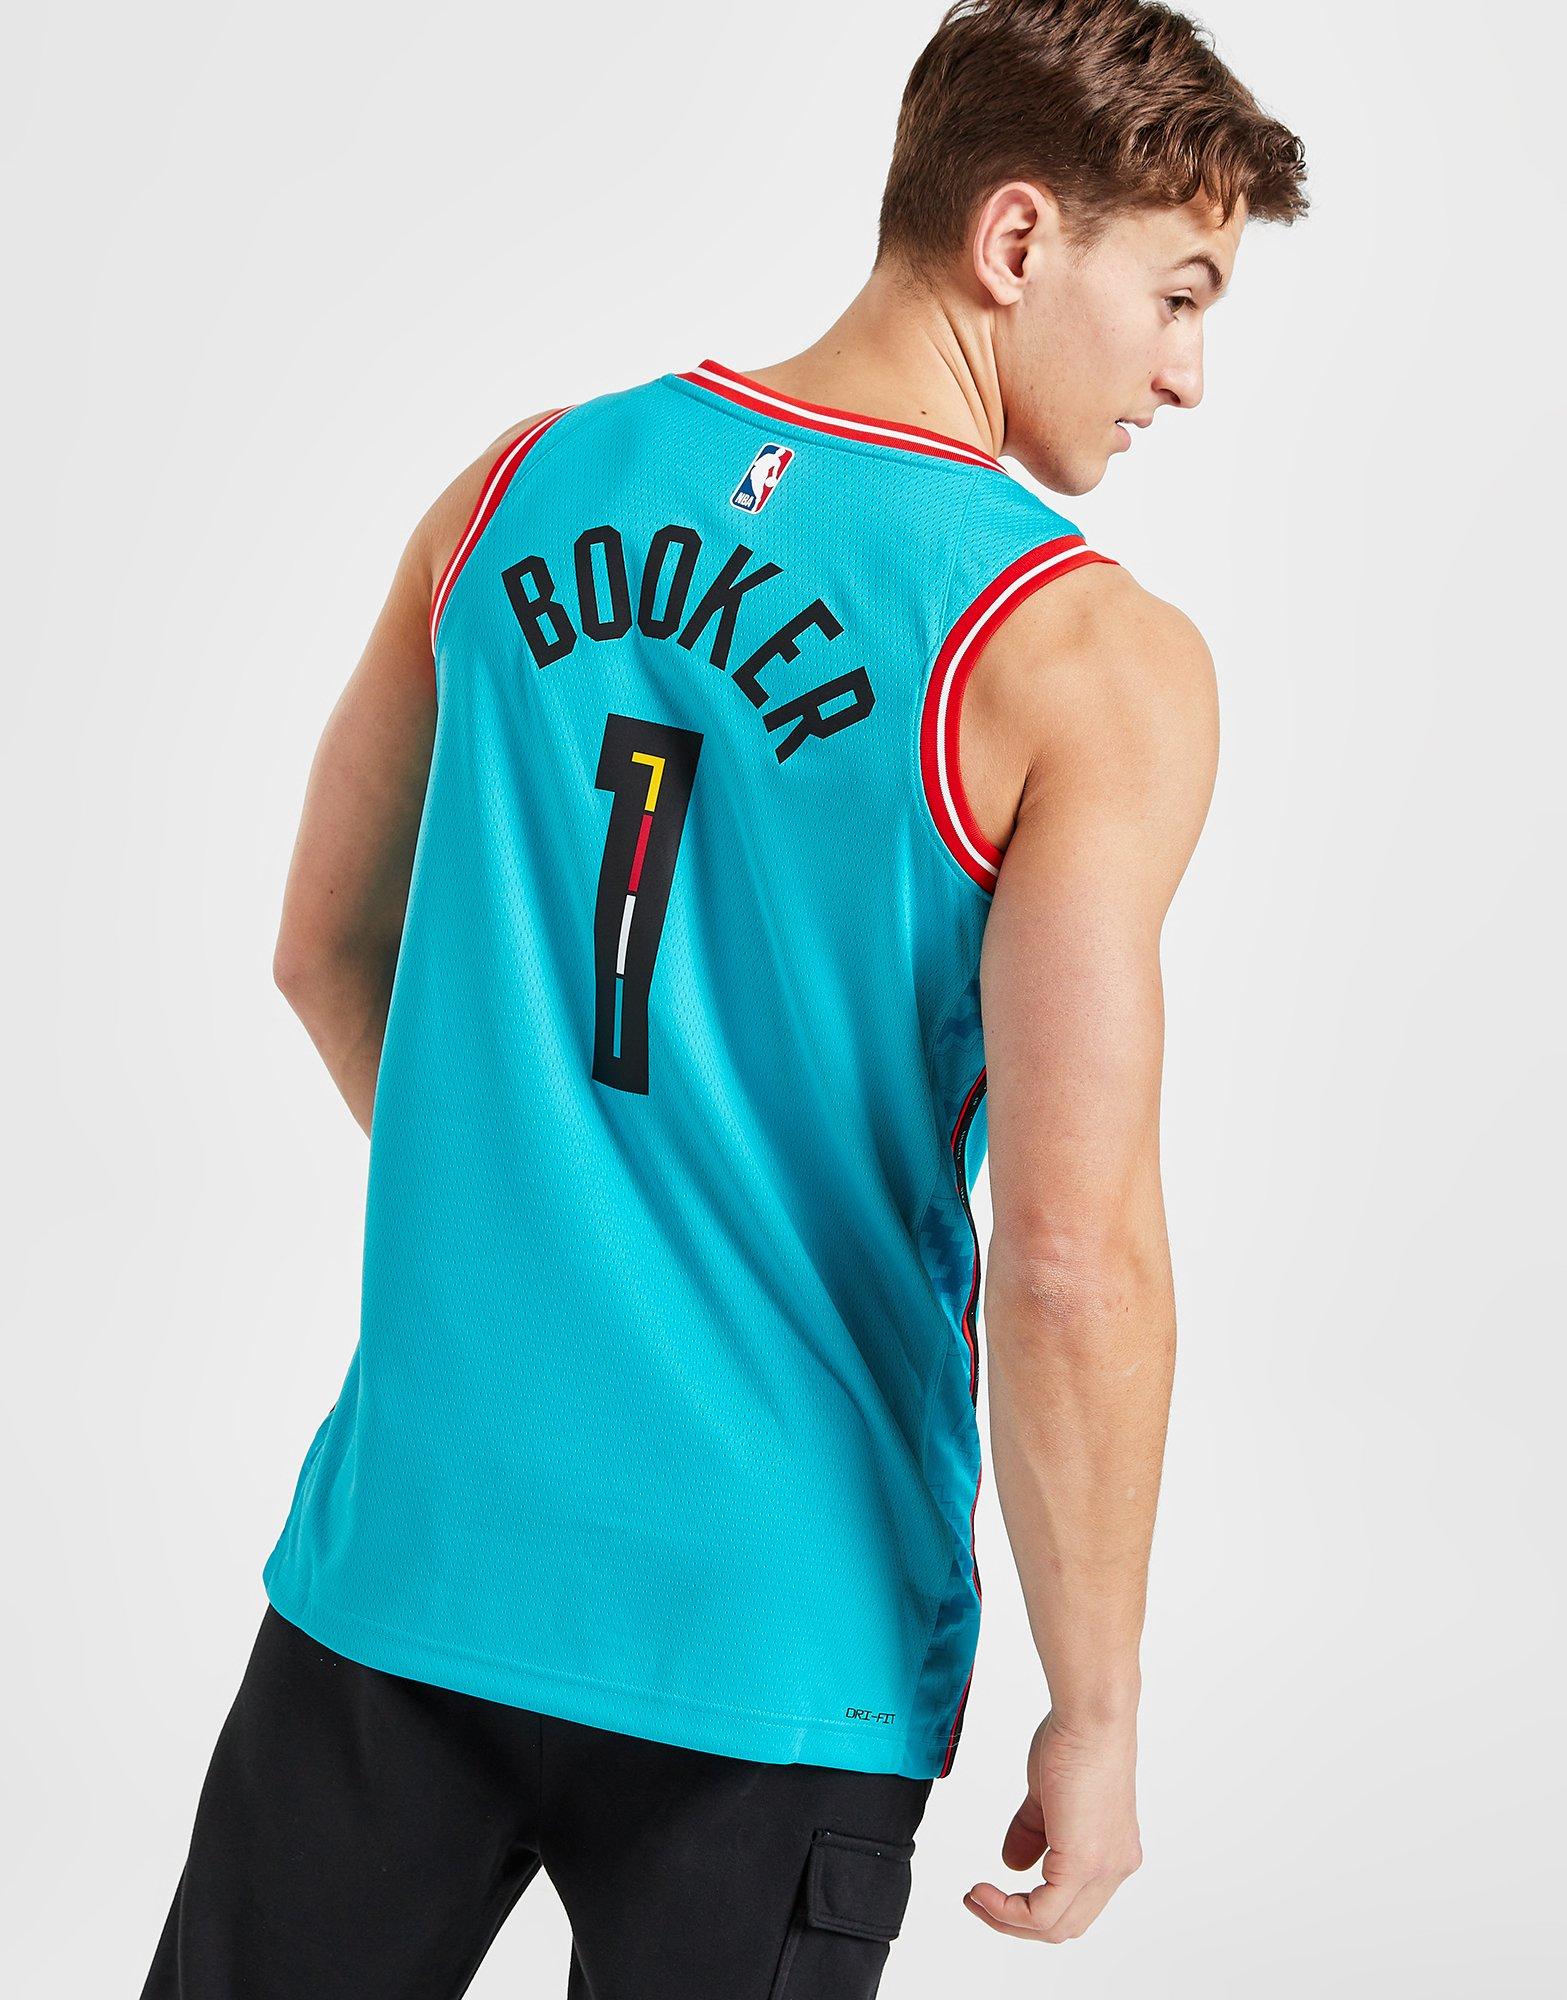 Nike NBA Phoenix Suns Booker #1 Swingman Jersey in Schwarz für